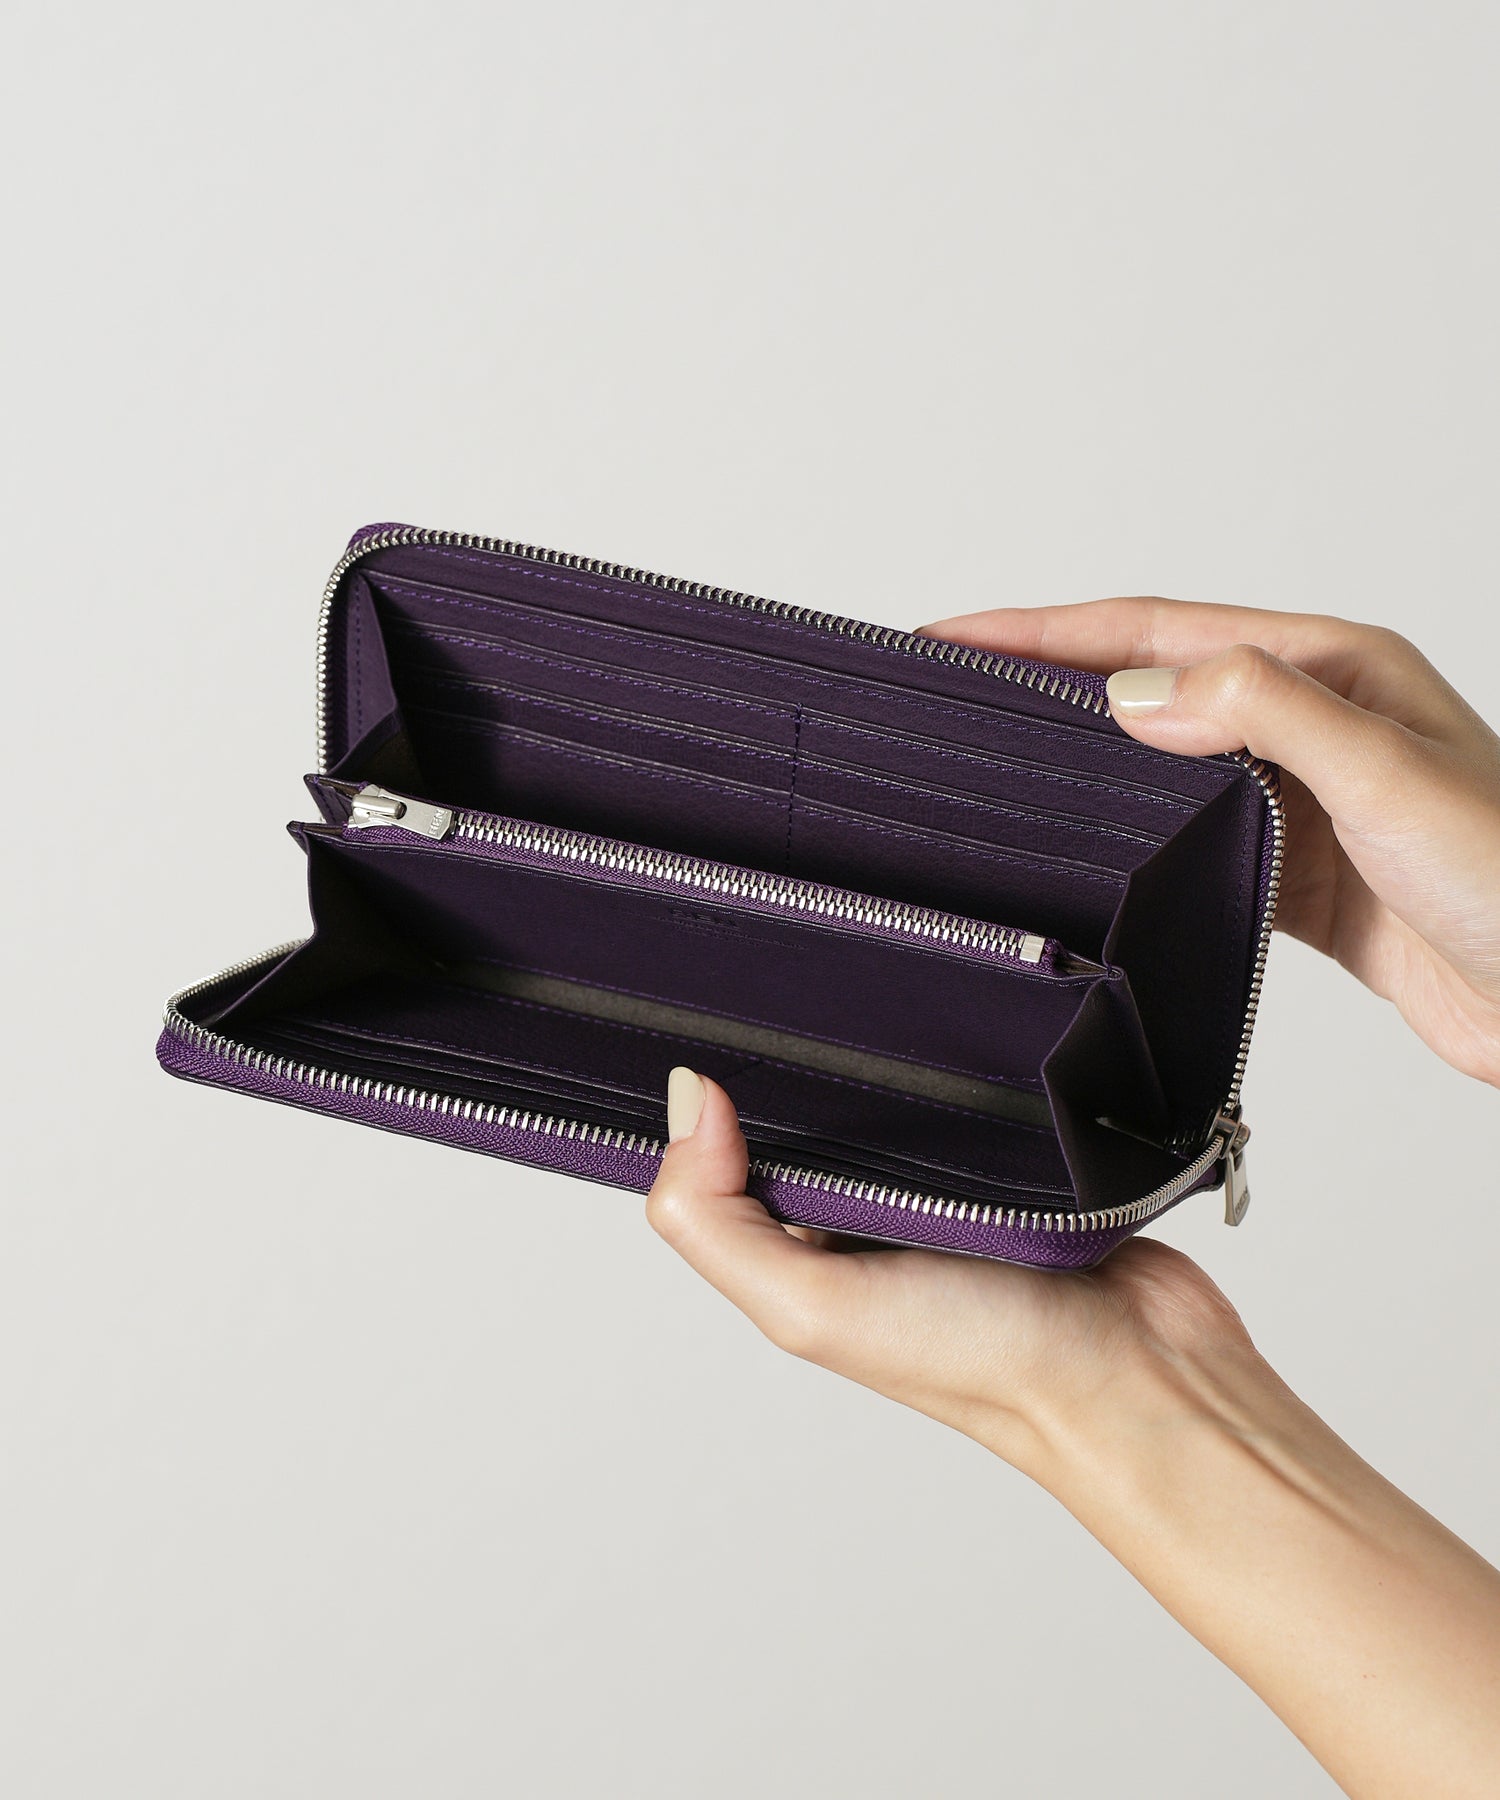 REN / スリムな長財布。ファスナータイプのロングウォレット。(purple)